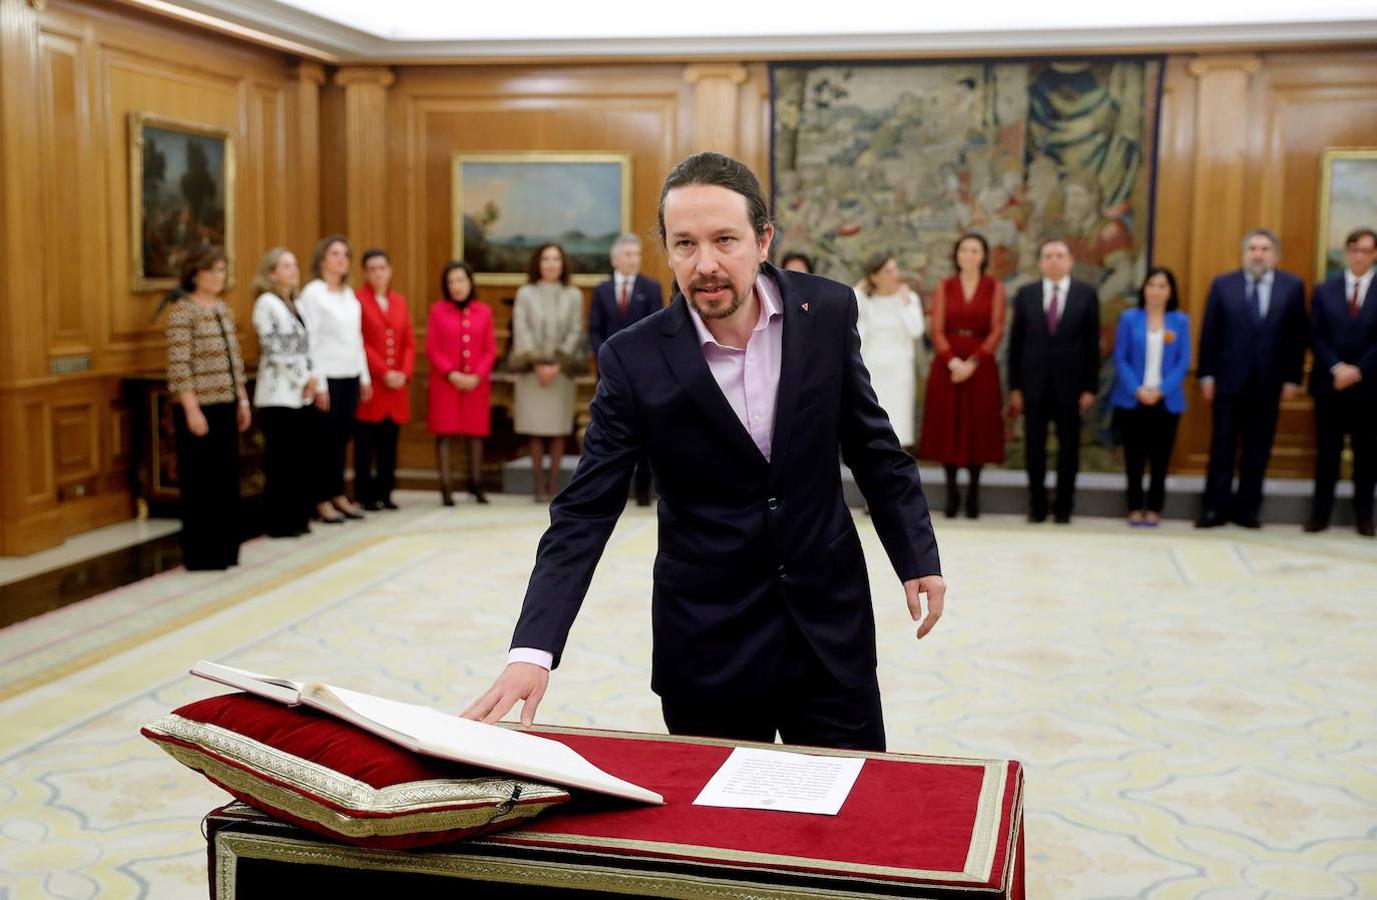 El nuevo vicepresidente de Derechos Sociales y Agenda 2030, Pablo Iglesias, promete su cargo ante el rey Felipe VI.